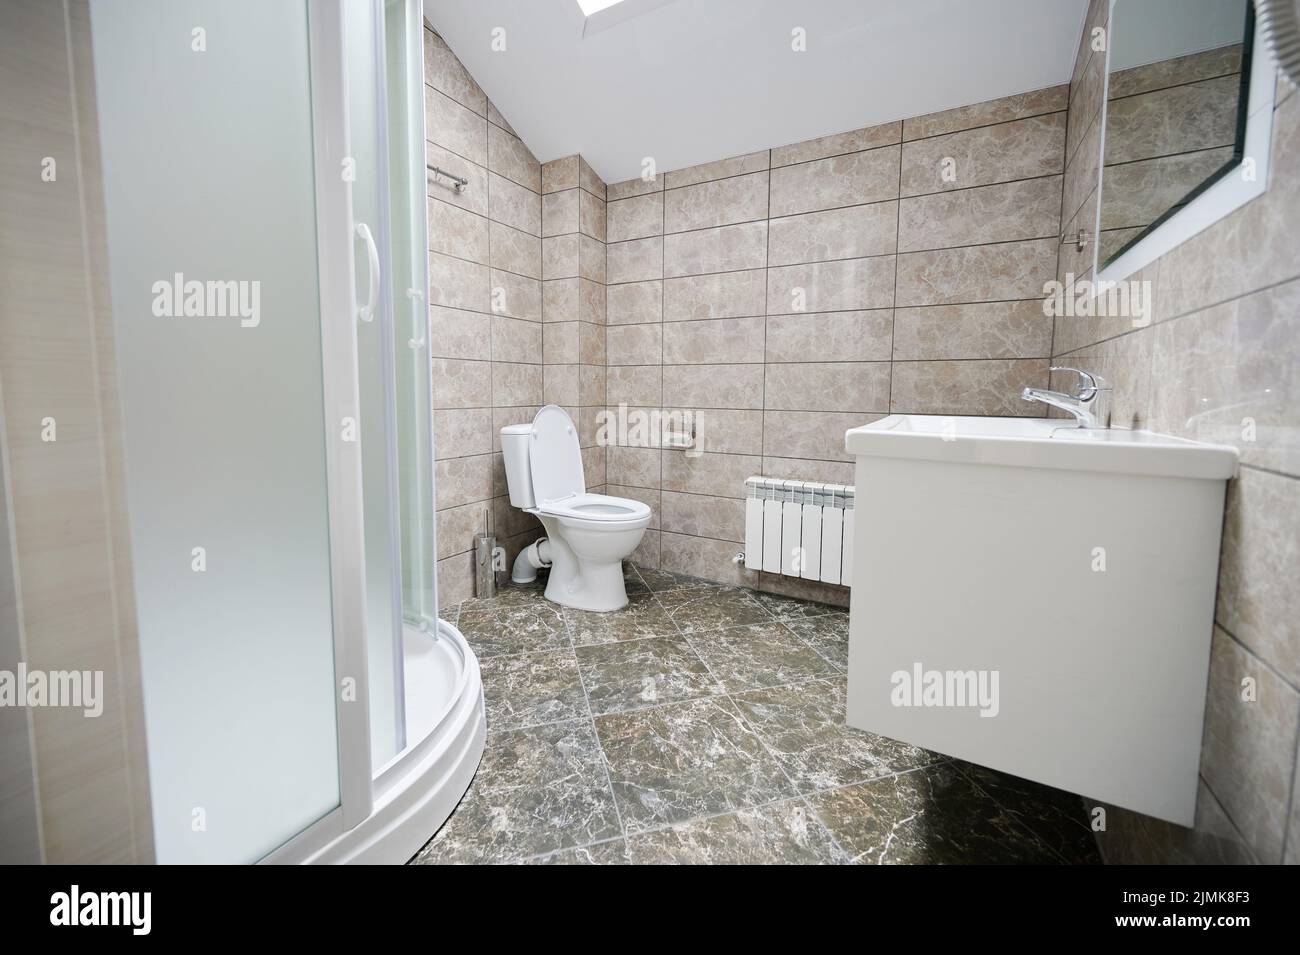 El cuarto de baño estaba vacío y tenía un interior de mármol limpio Foto de stock